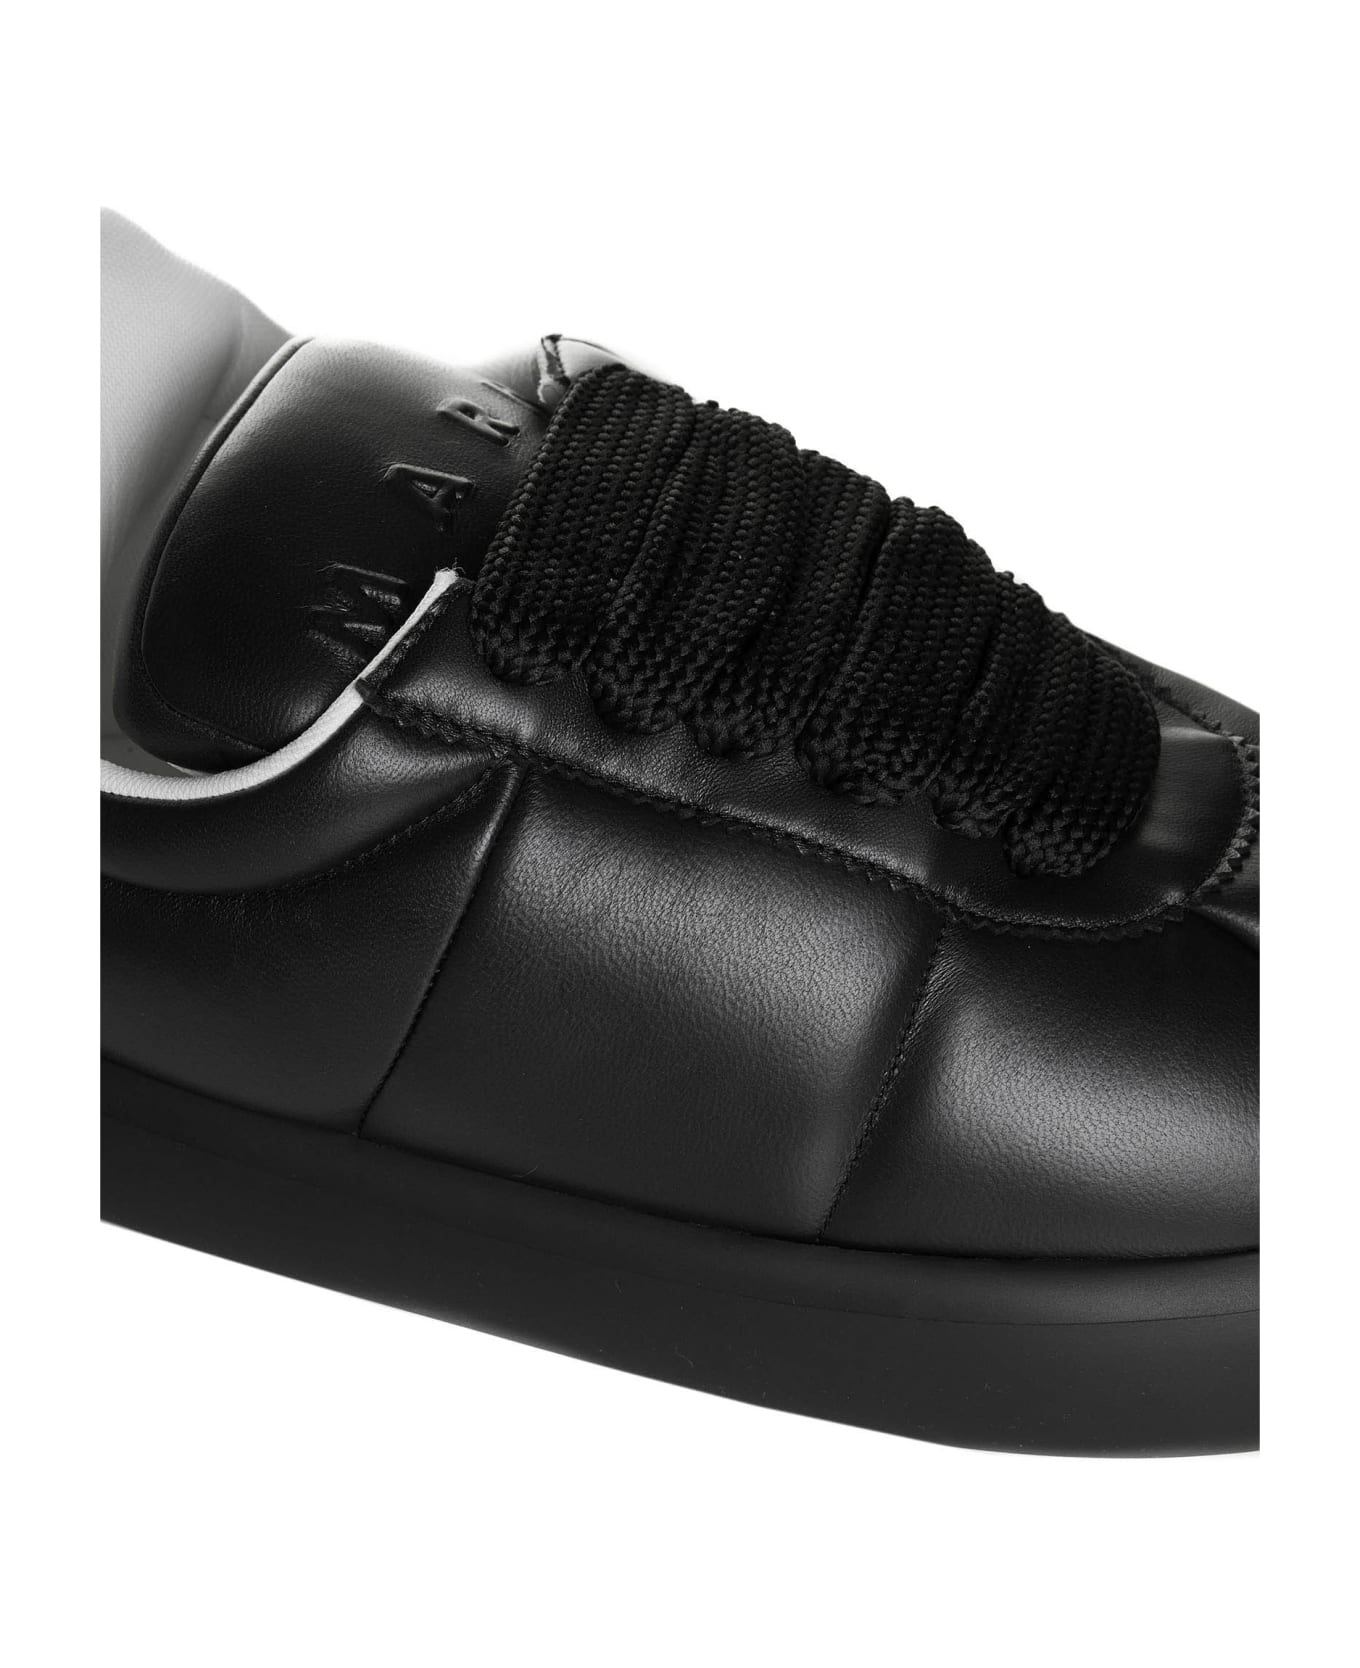 Marni Sneakers - Black スニーカー